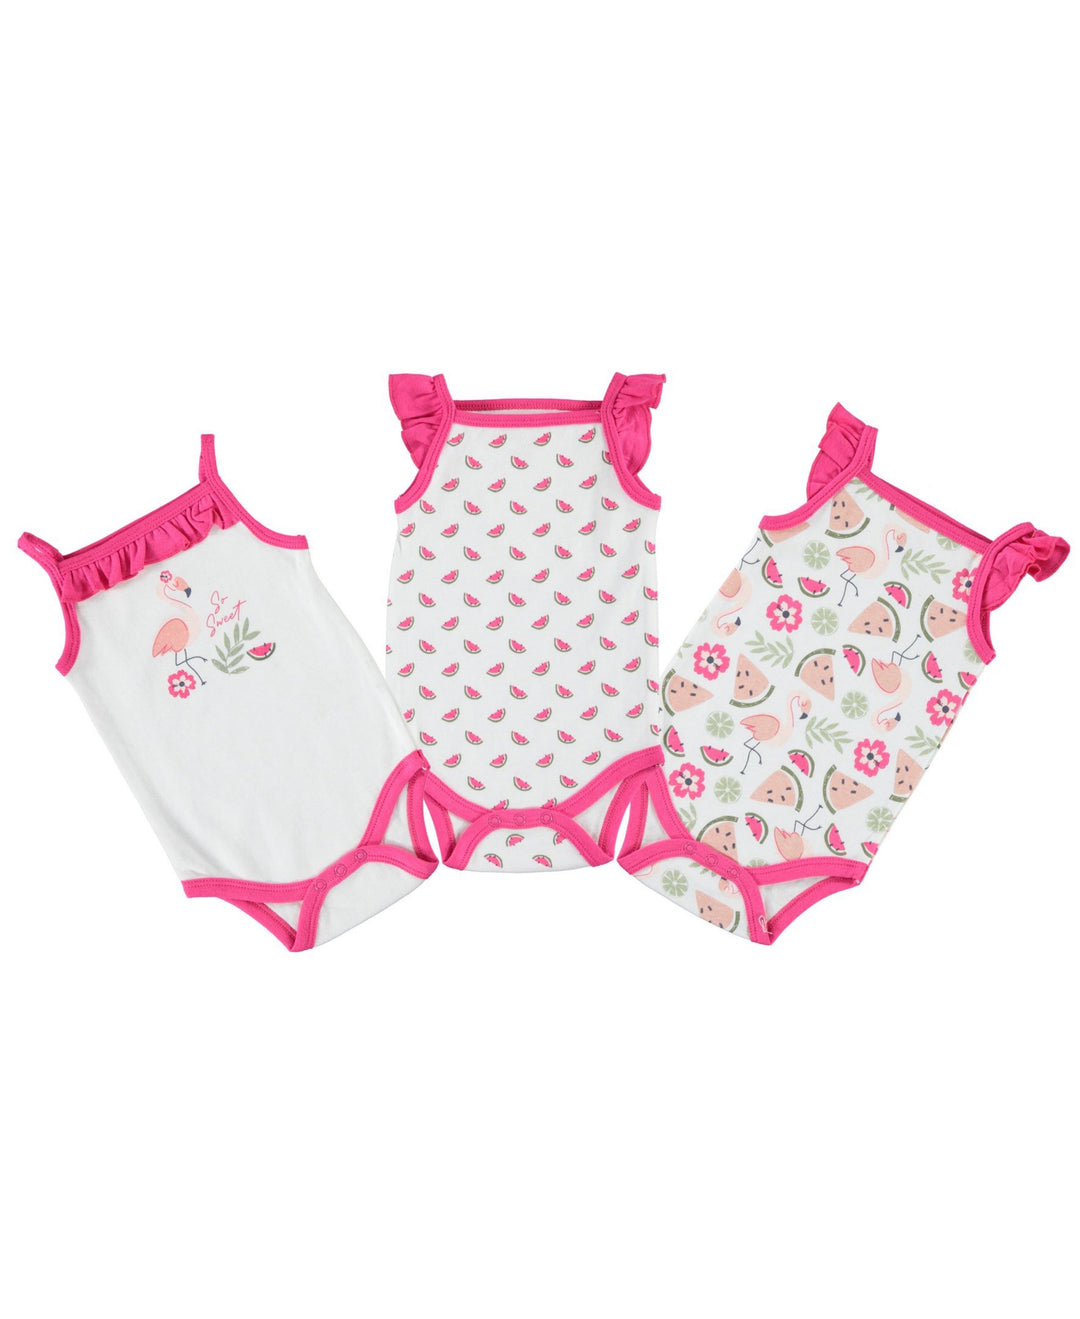 Baby-Girl-Newborn-Essentials-Onesie-Bodysuit-Clothes-Baby-Registry-Shower-Gift-Sleeveless-Image1